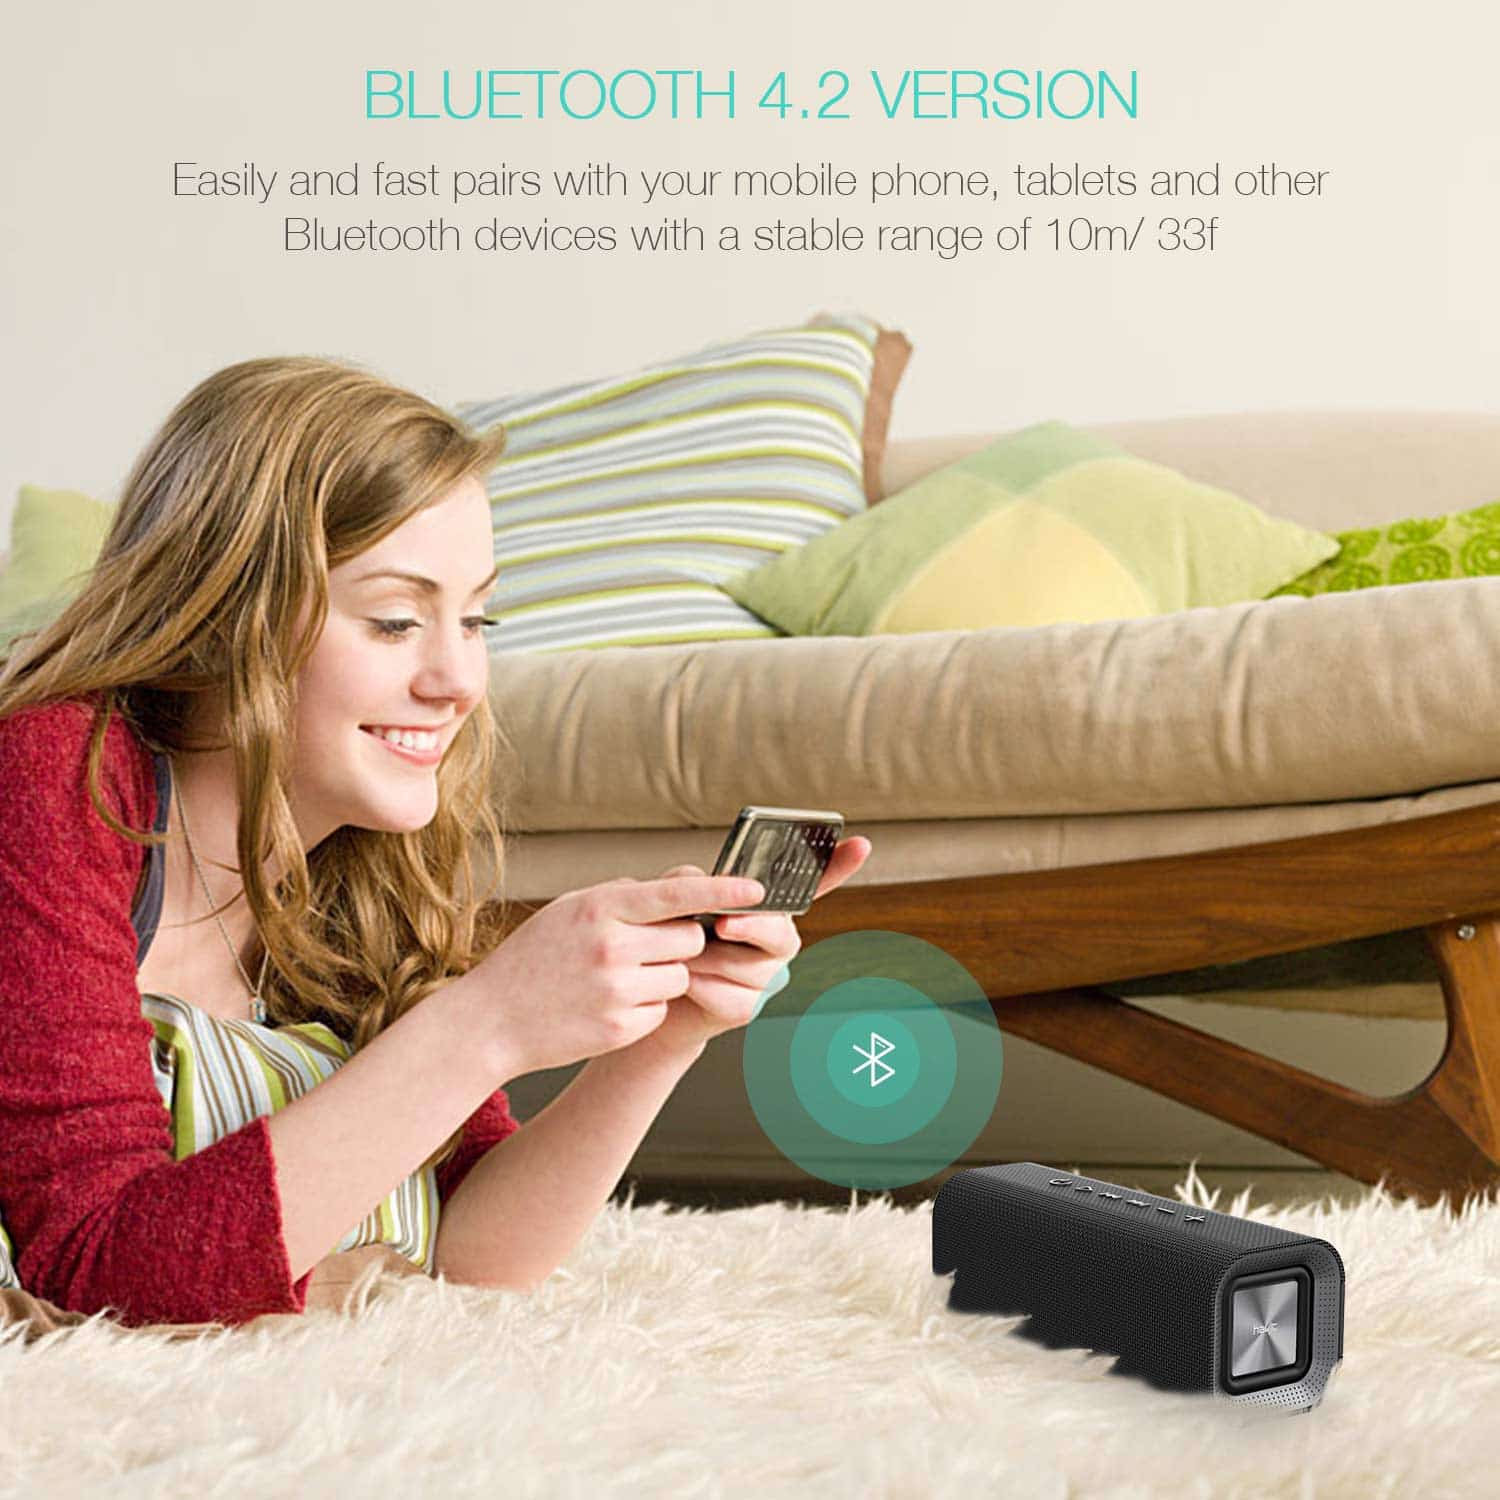 Haut-parleurs Bluetooth décoratifs M16 avec surface en maille de tissu tissé et sortie 10 W